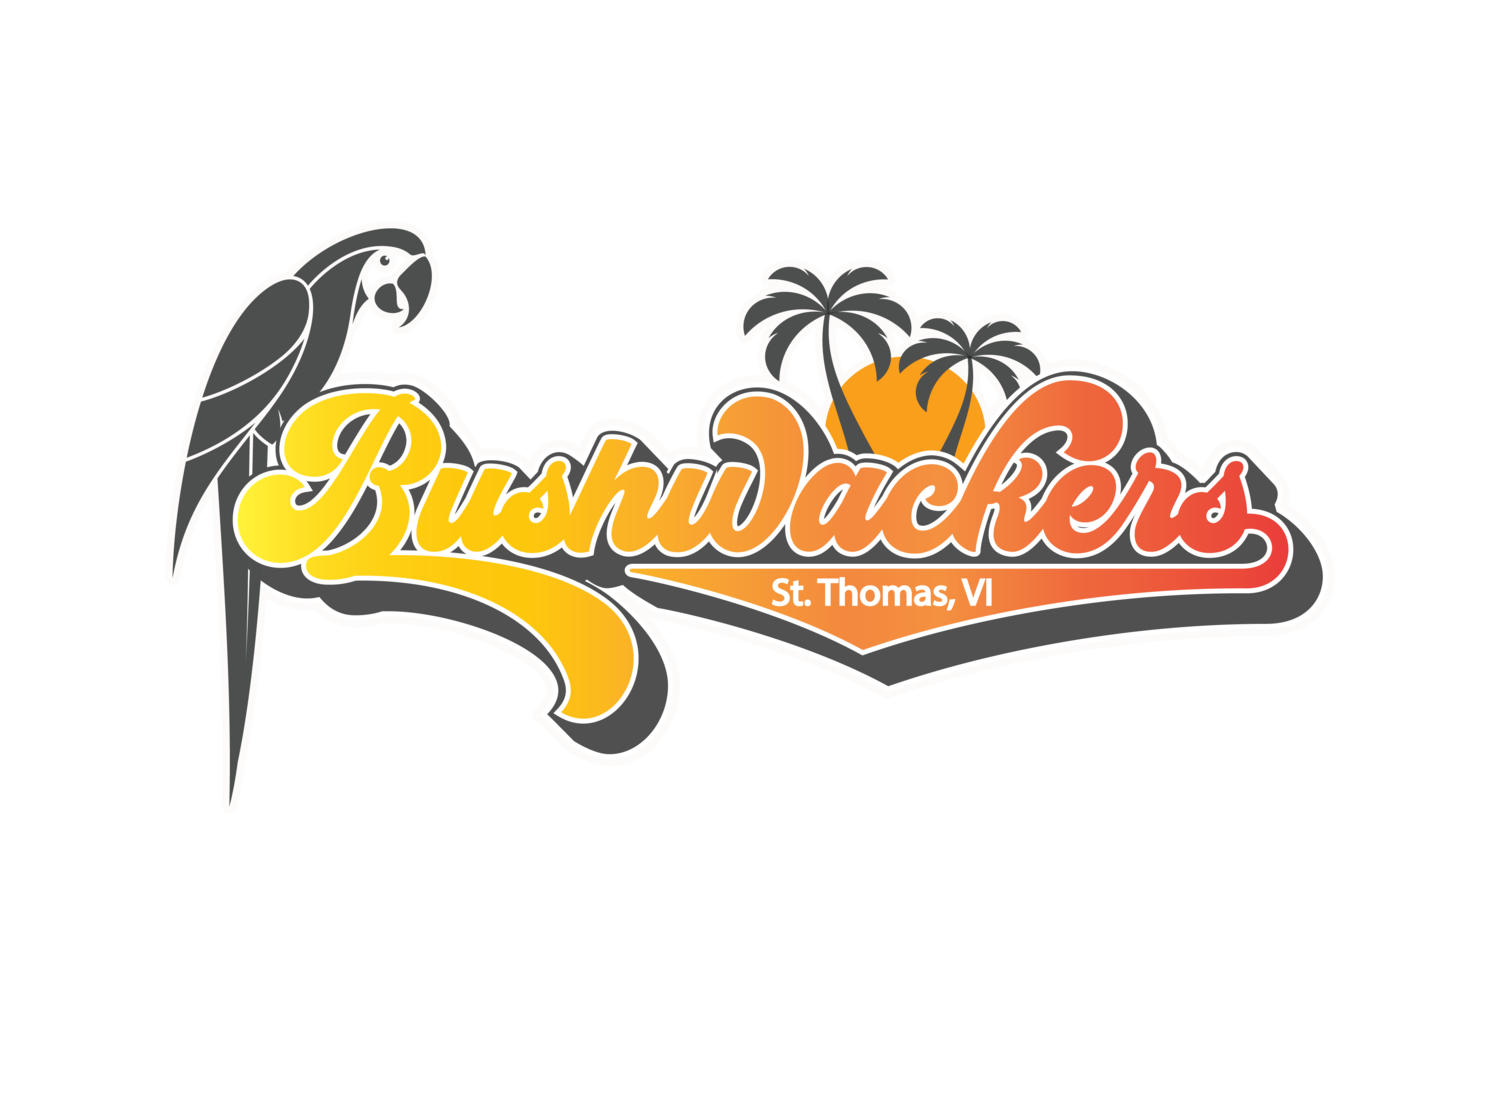 Bushwackers 